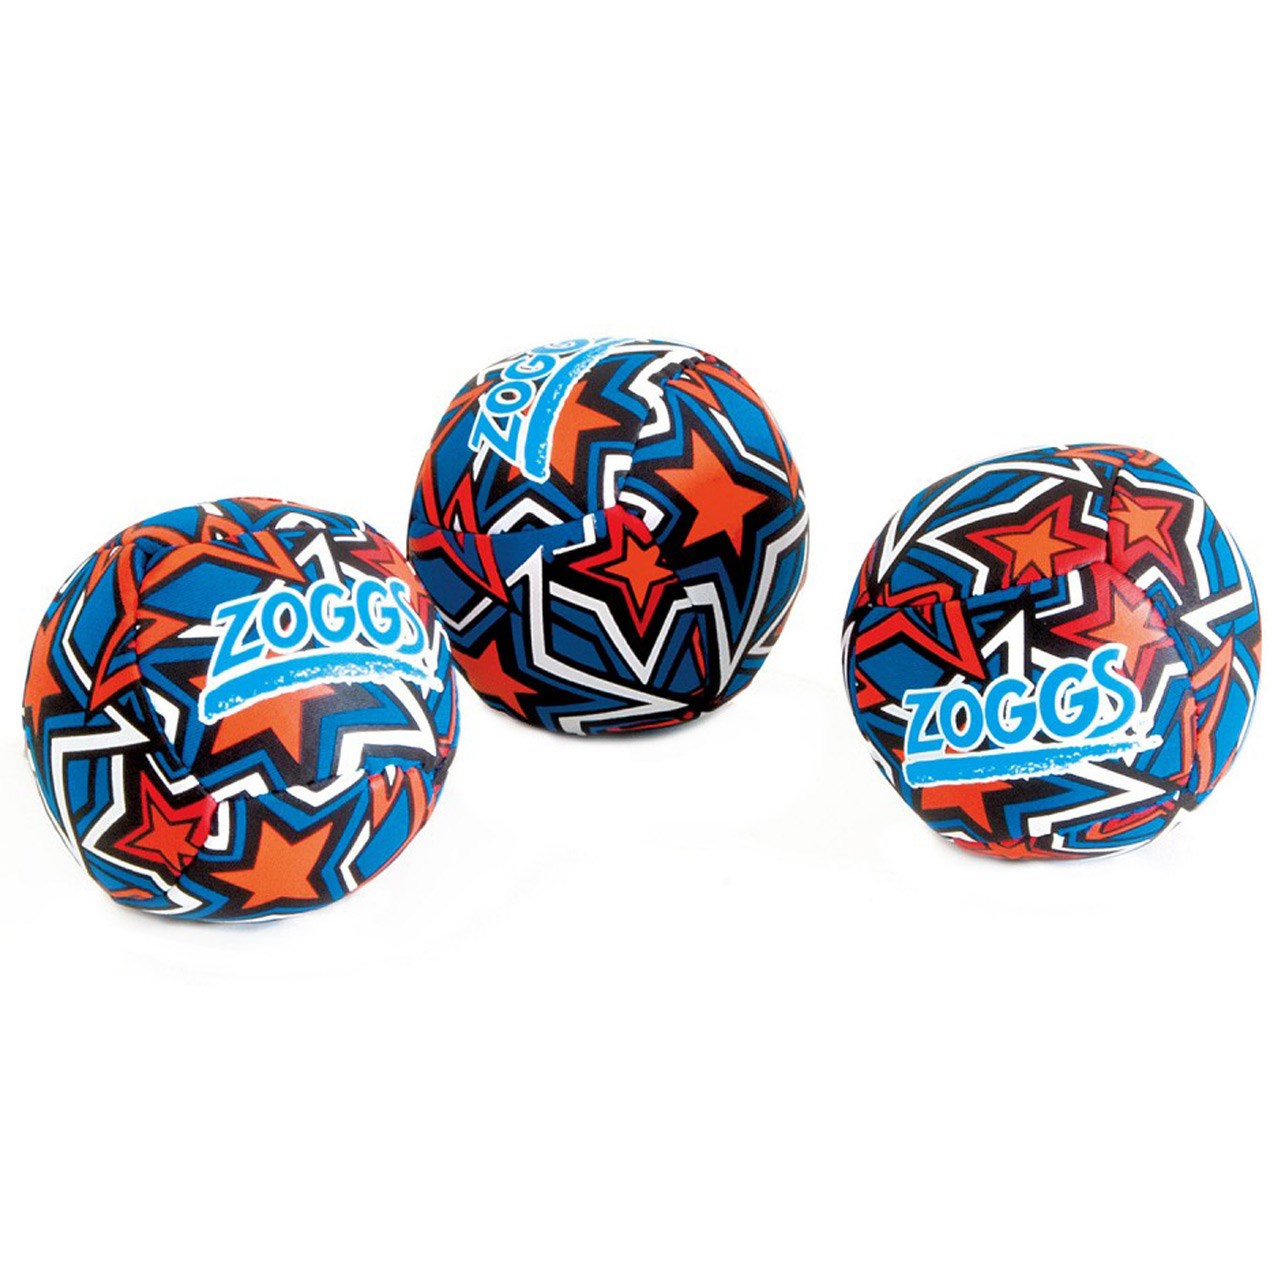 توپ اسفنجی زاگز مدل Splash Balls بسته 3 عددی